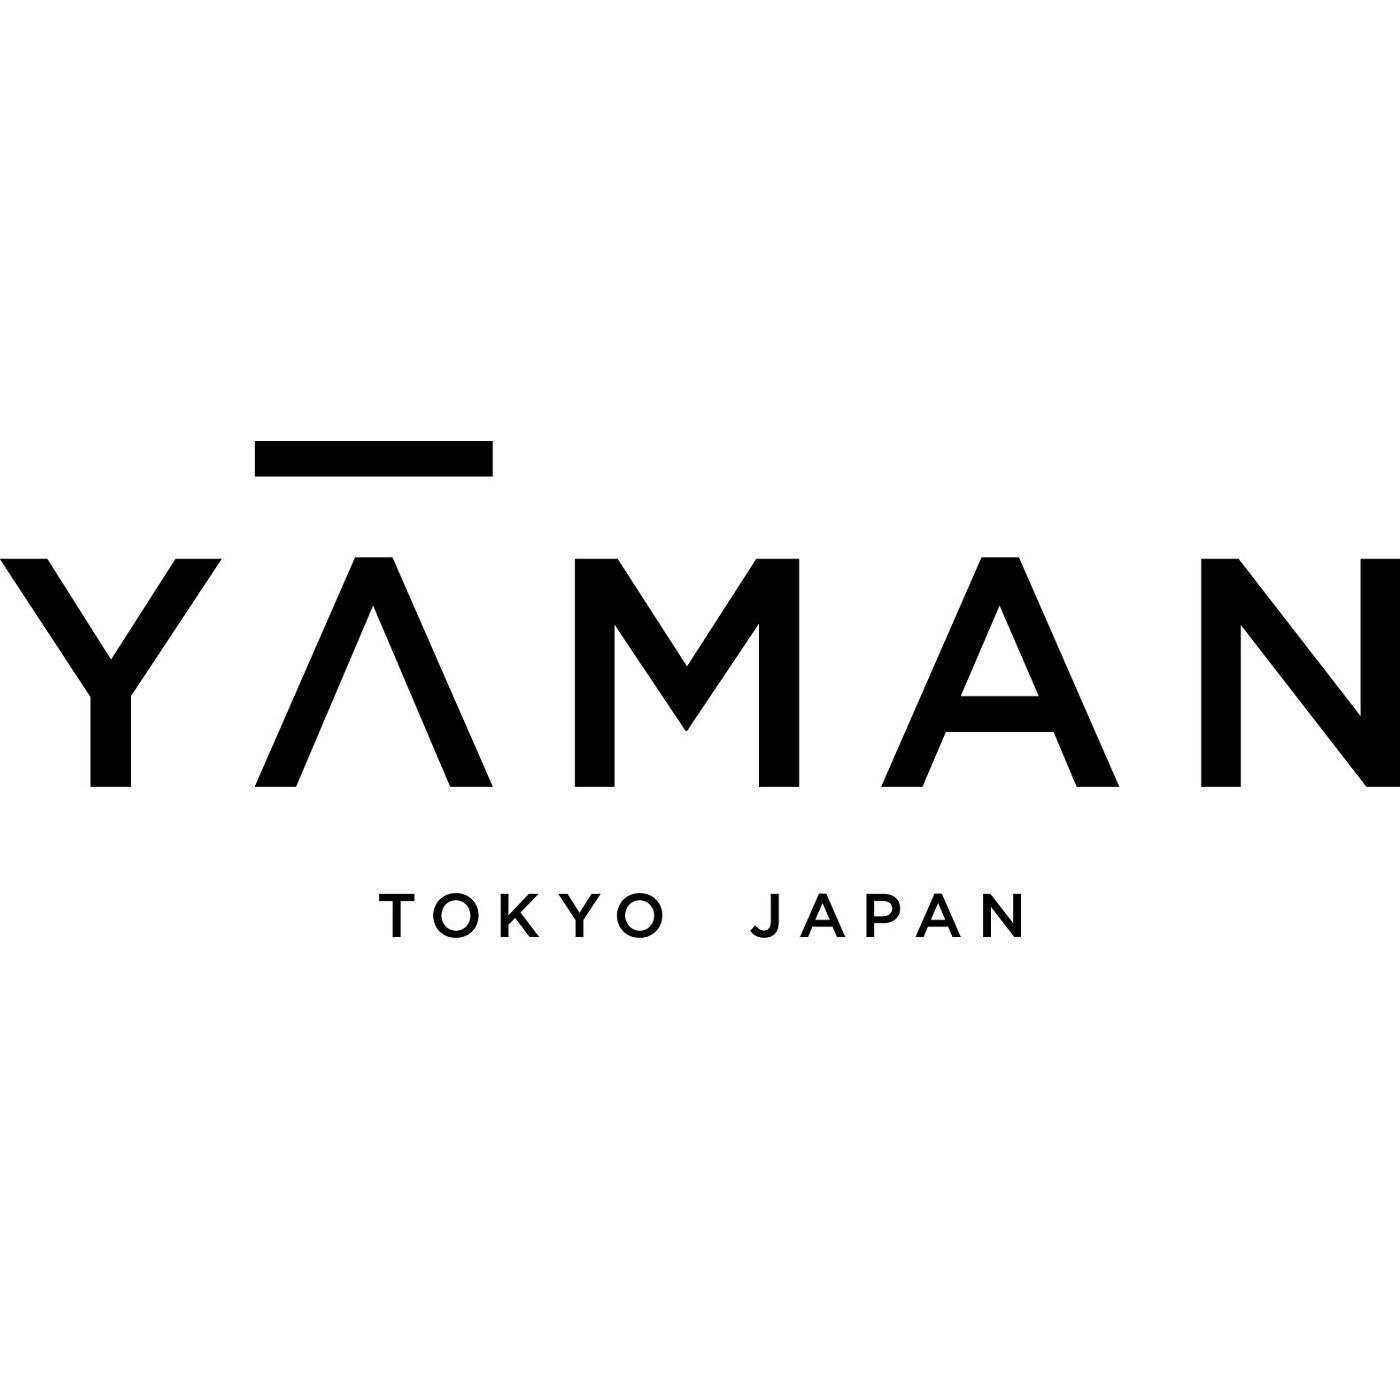 BEAUTY PROJECT レンタル|【レンタル1ヵ月コース】おうちエステで光脱毛 ヤーマン レイボーテGO〈顔・からだ用〉|[YA-MAN TOKYO JAPAN]精密機器、業務用美容機器を開発してきた美容専業メーカーとして、先端テクノロジーと常識を超えたアイデアを駆使して、お客様へ新たな美を創造する YA-MAN TOKYO JAPAN